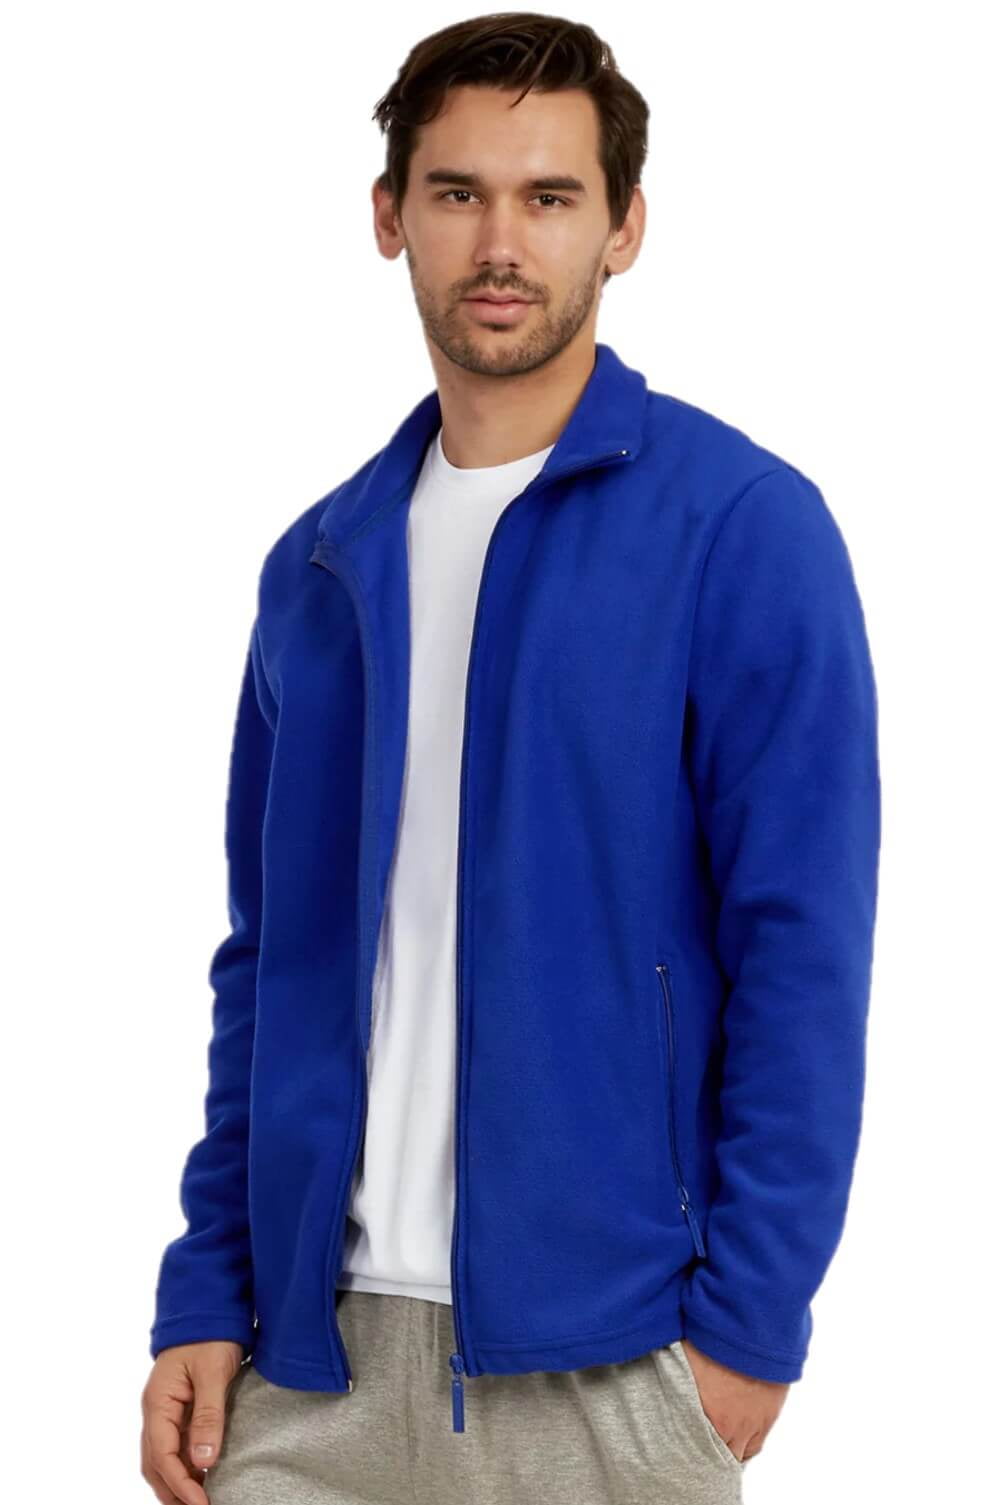 Men's Full-Zip Polar Fleece Jacket, Royal Blue 2XL, 1 Count, 1